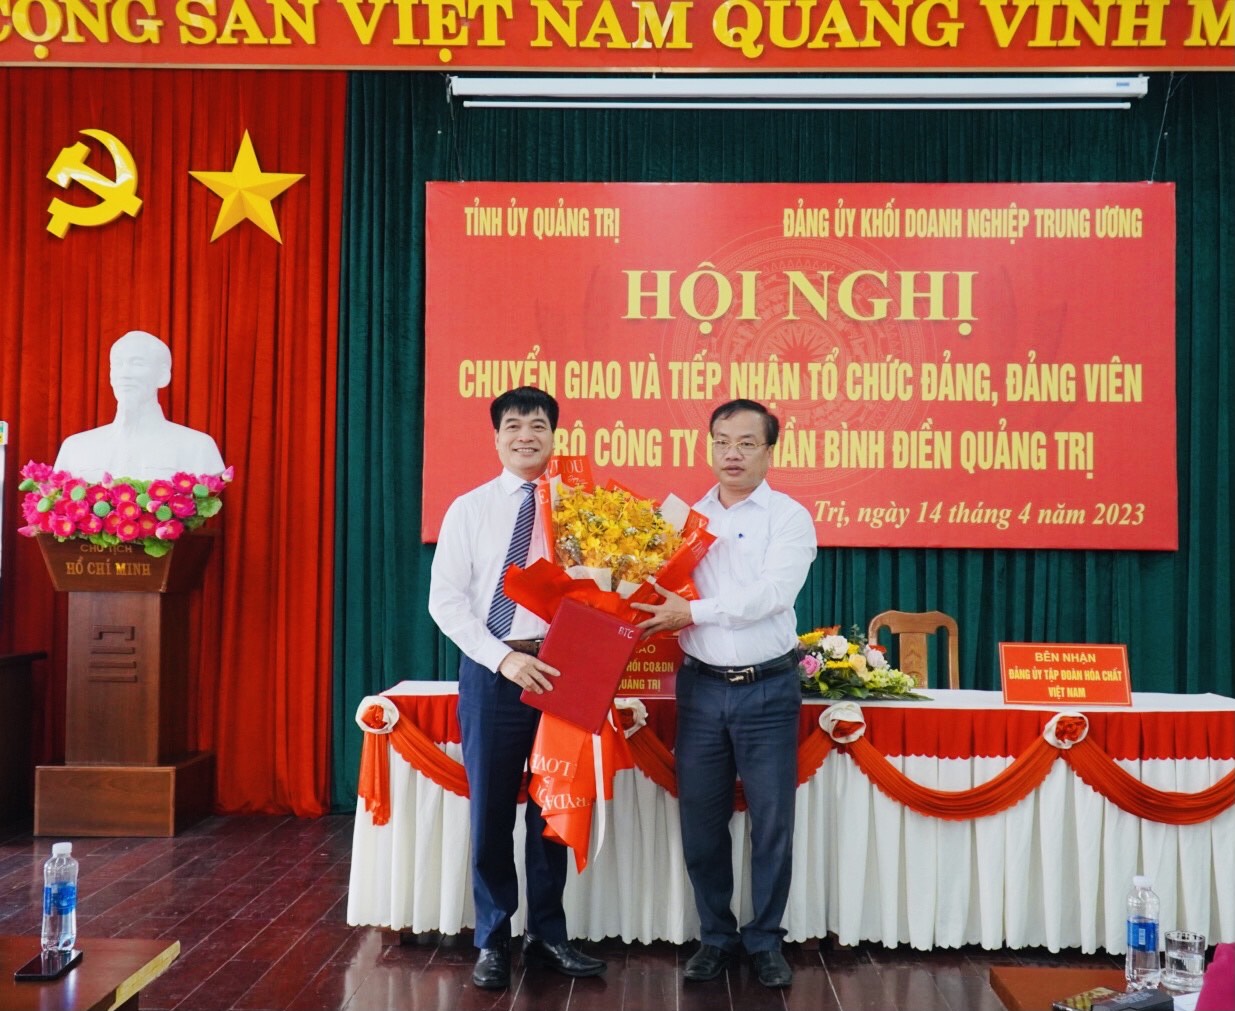 Đồng chí Hồ Ngọc Ánh - Phó trưởng Ban Tổ chức Tỉnh uỷ Quảng Trị trao Quyết định chuyển giao TCCS Đảng và đảng viên cho đại diện Đảng ủy Tập đoàn Hóa chất Việt Nam.